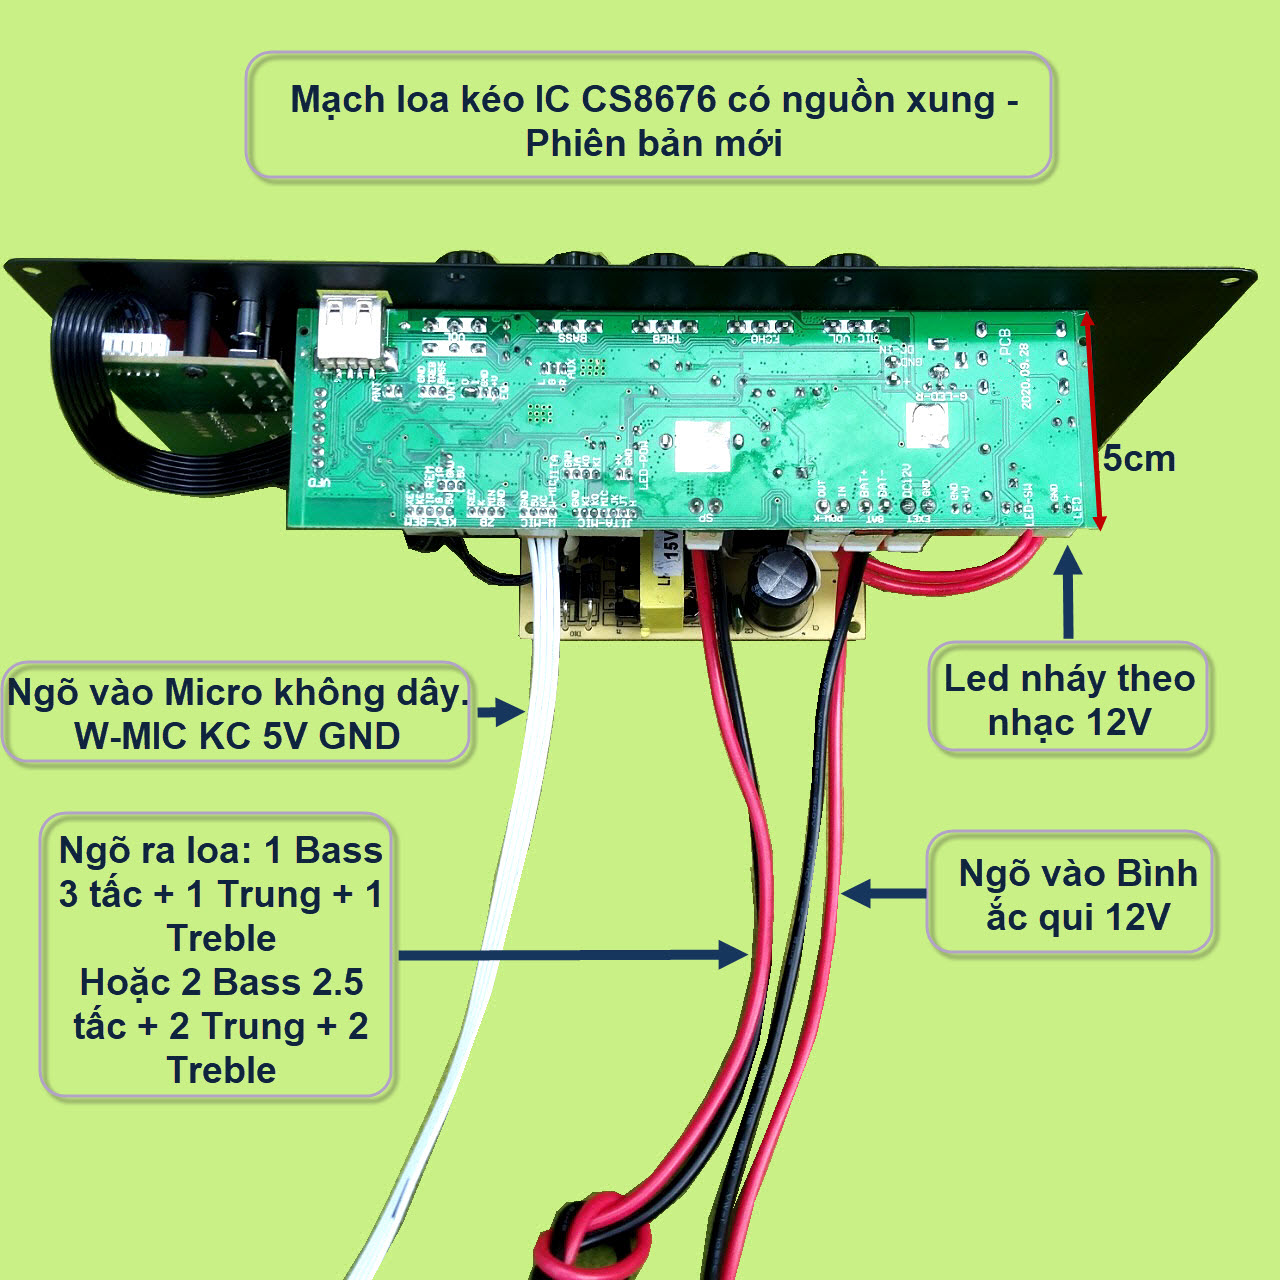 Mạch loa kéo CS8676 có nguồn xung kèm Micro đơn hoặc Micro đôi – Bluetooth